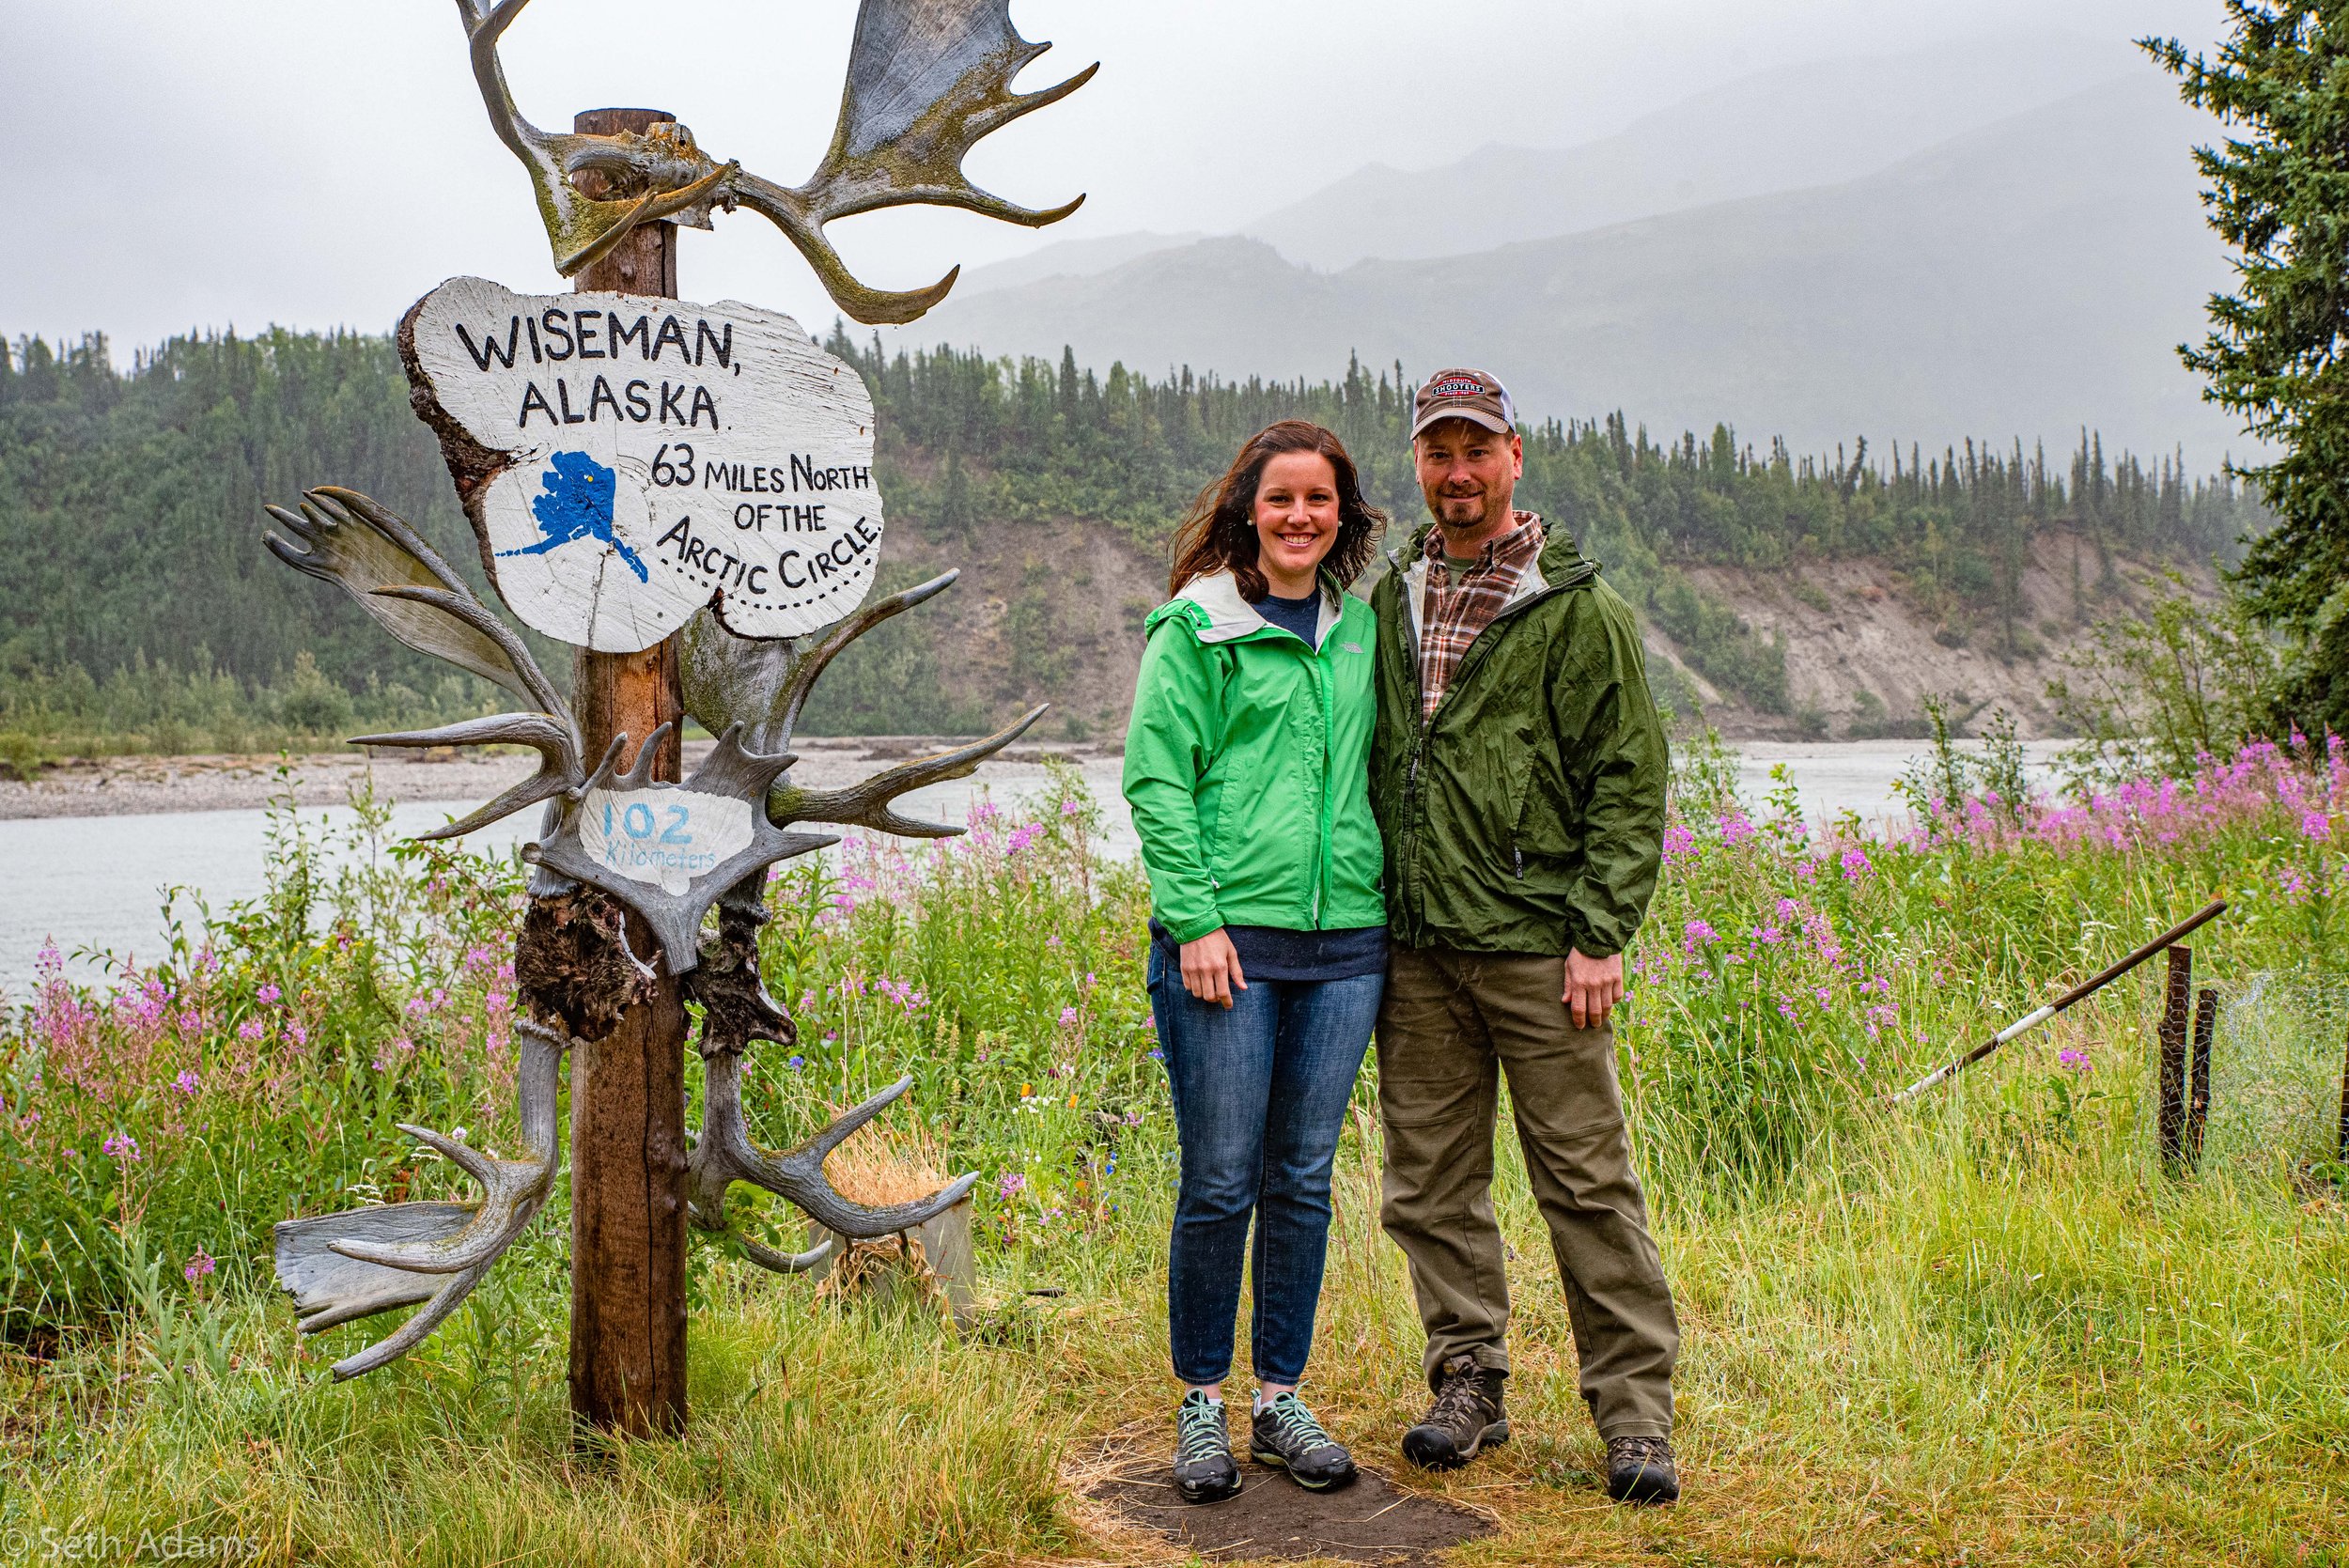 WSE - moose antler sign - 2019 July - SAdams.jpg